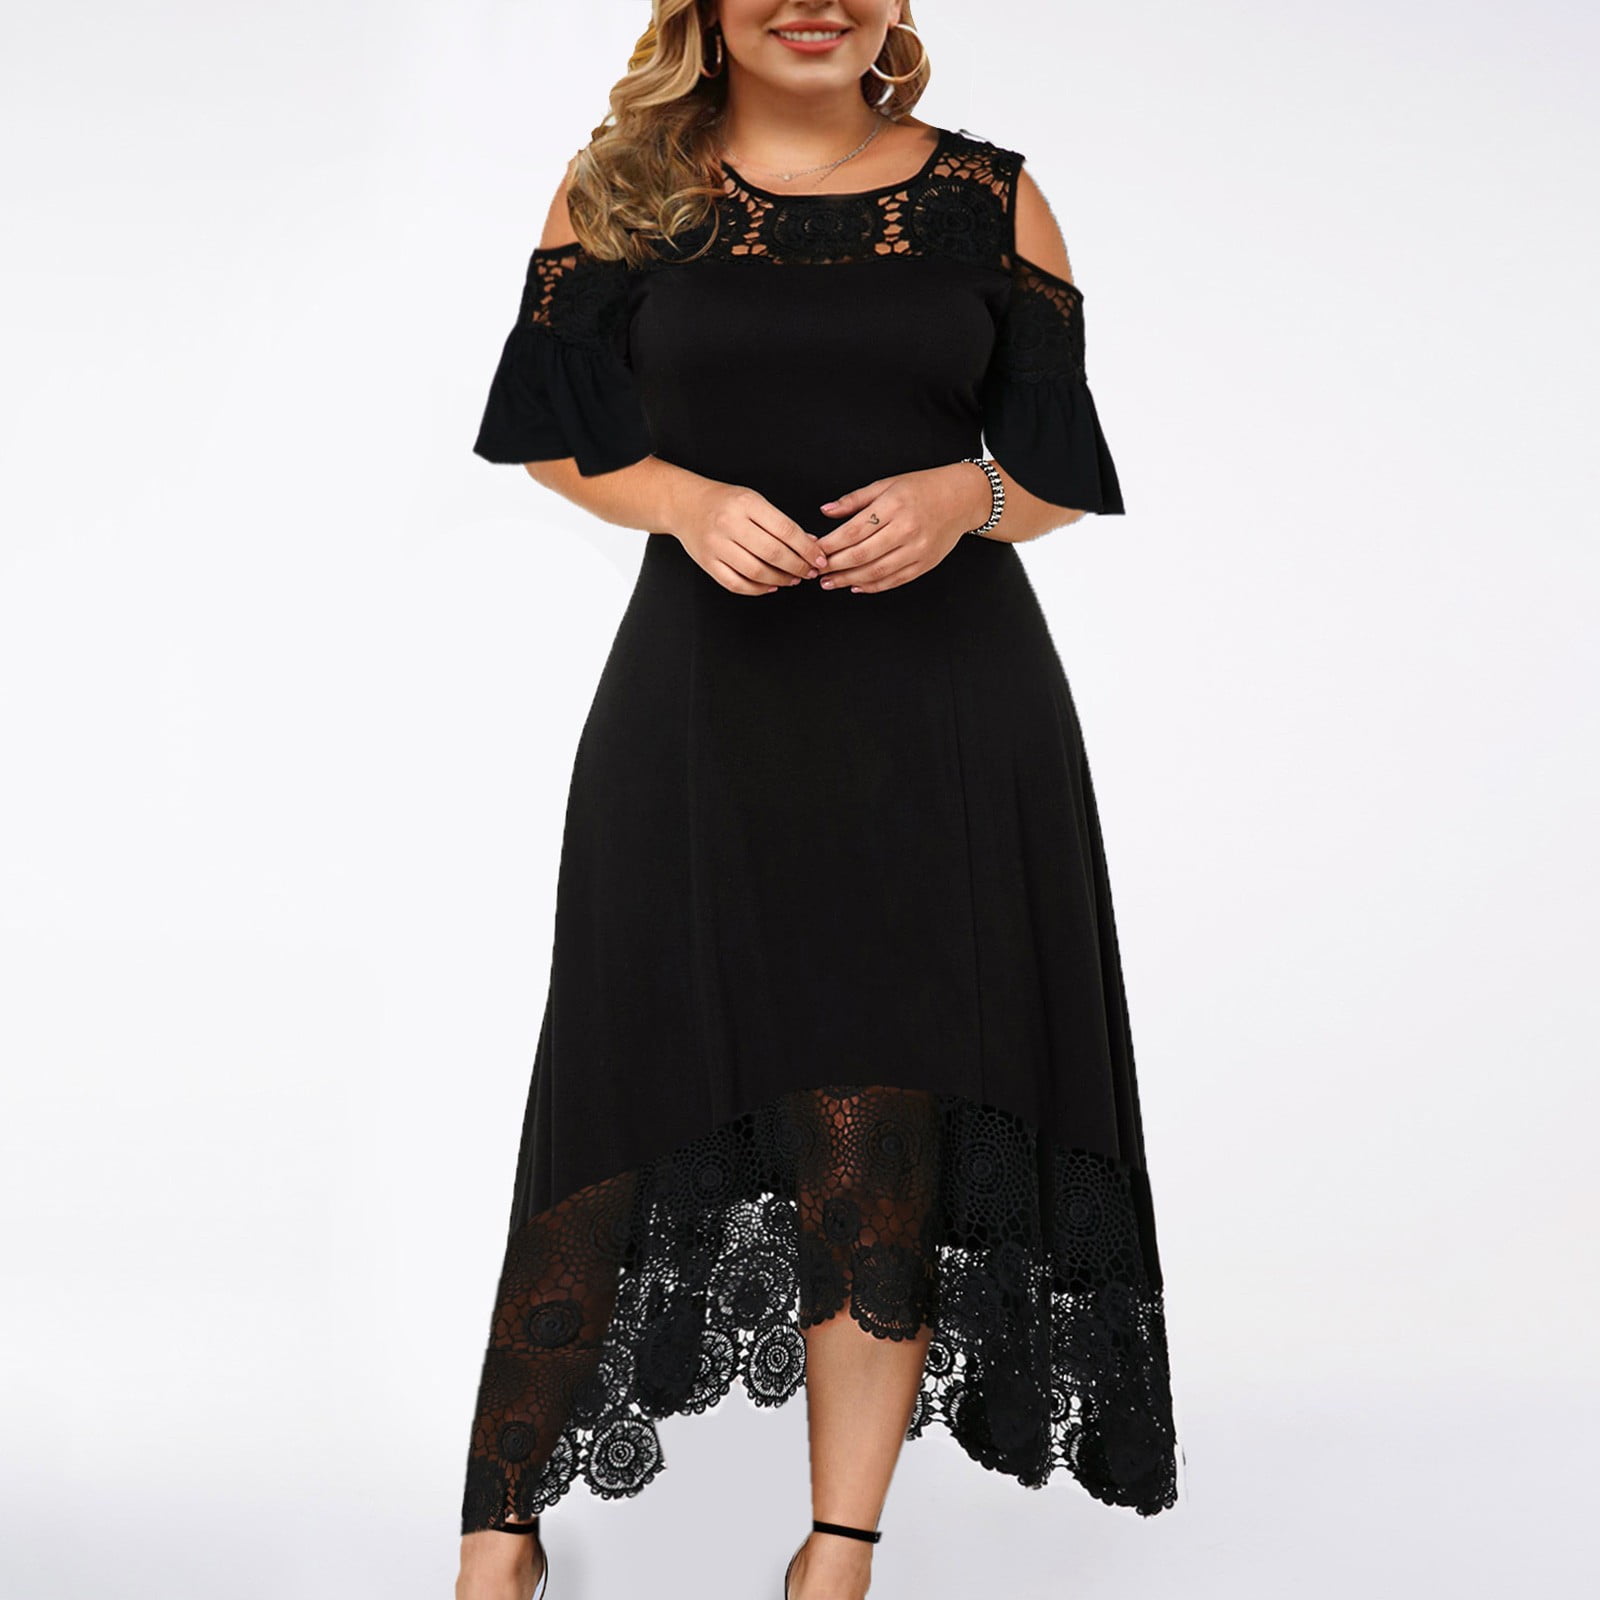 Plus Split Back Hem Knot Detail Dress  Plus size maxi dresses, Plus size  fashion, Black sheath dress